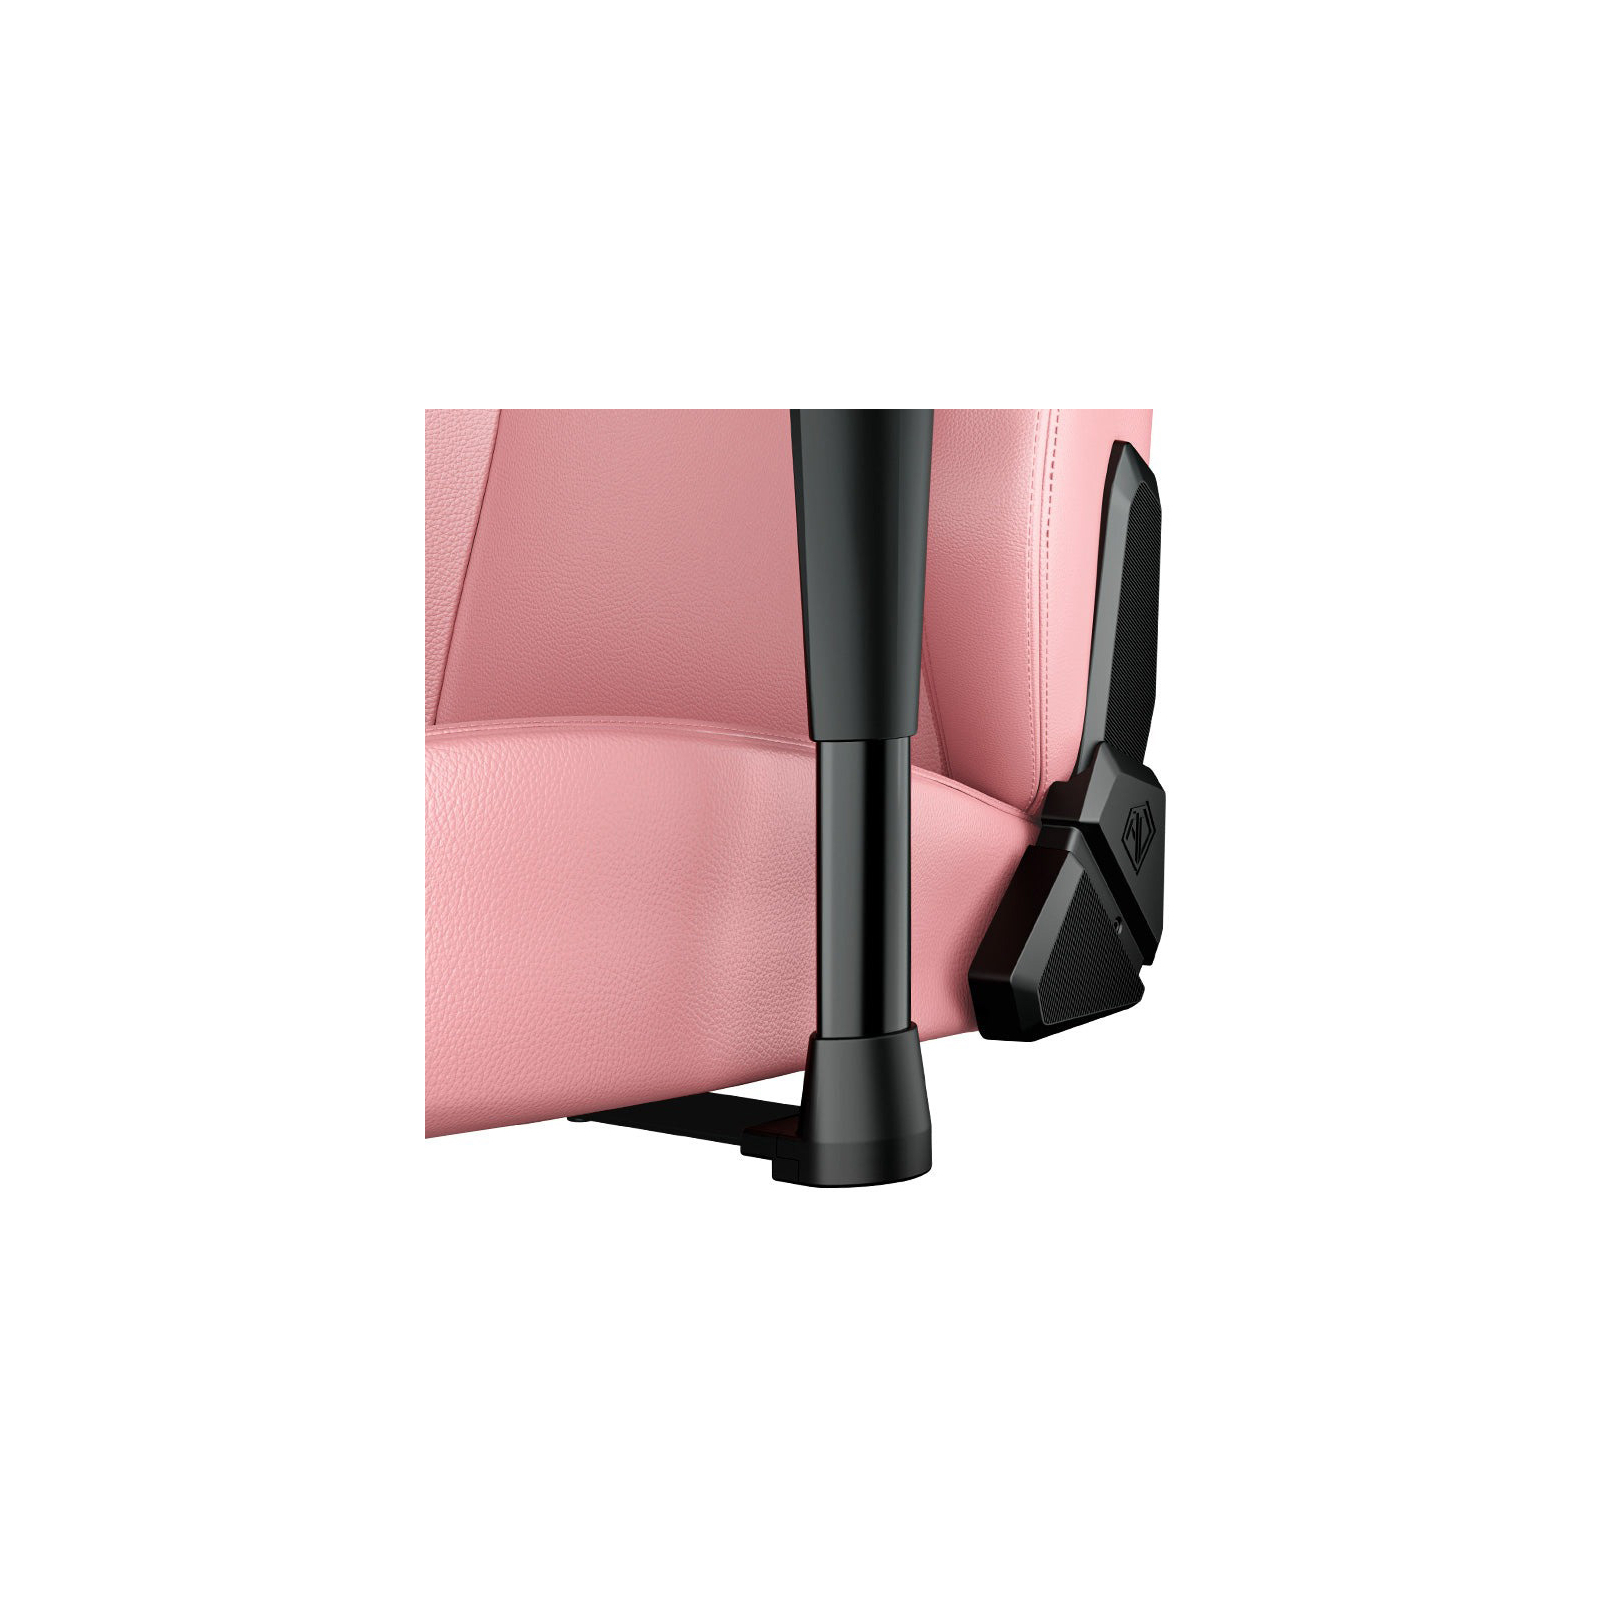 Кресло игровое Anda Seat Phantom 3 Size L Black/Black (AD18Y-06-B-PV/C-B01) изображение 8